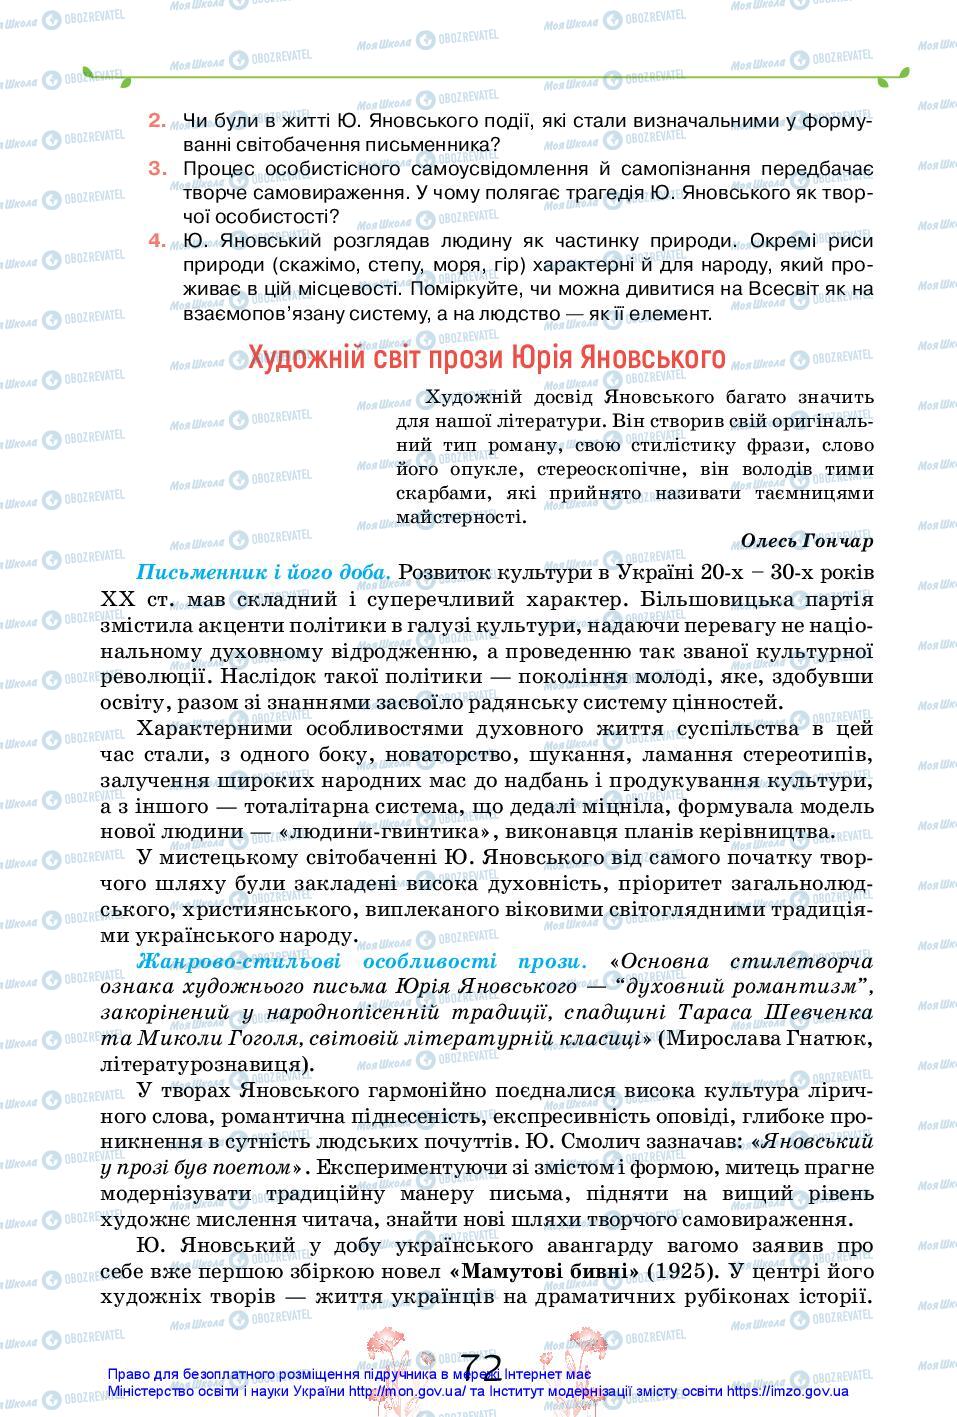 Підручники Українська література 11 клас сторінка 72